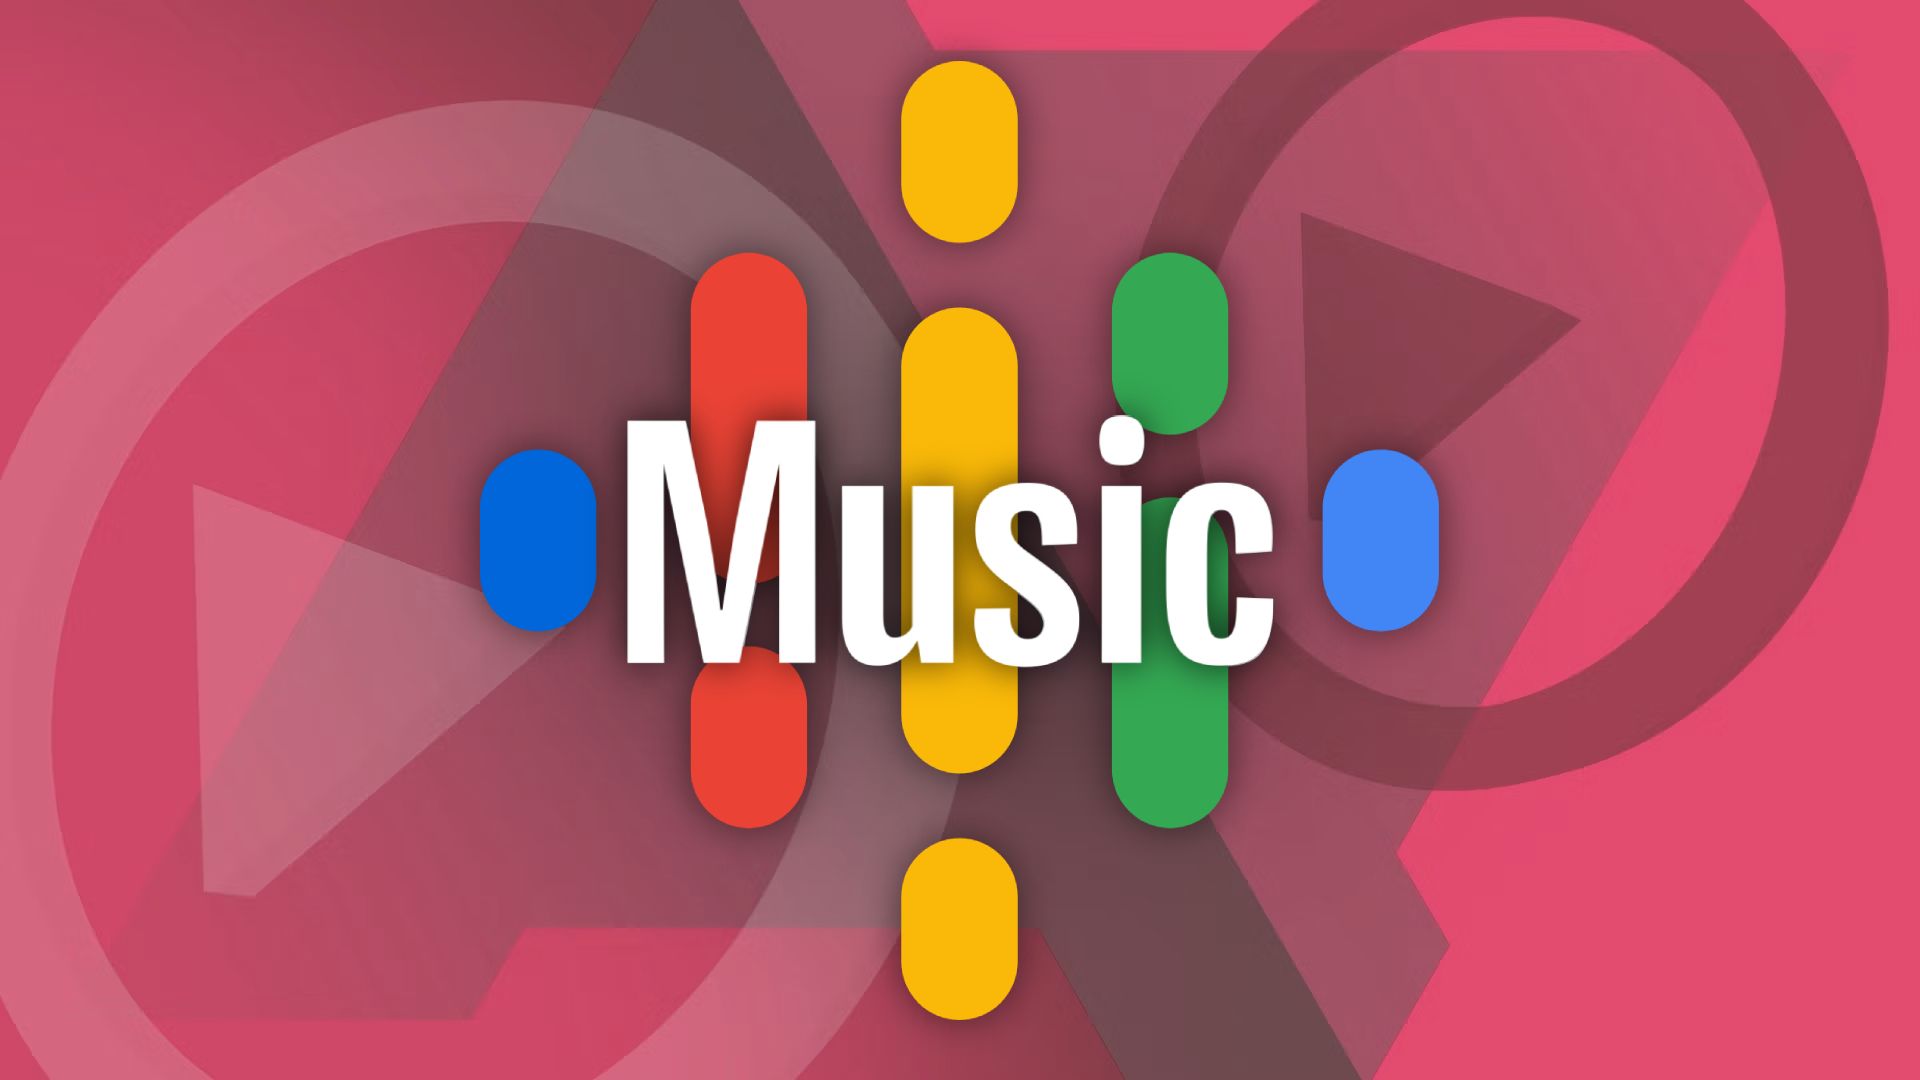 Google Podcasts bude nahrazen YouTube Musicem jako centrální platforma